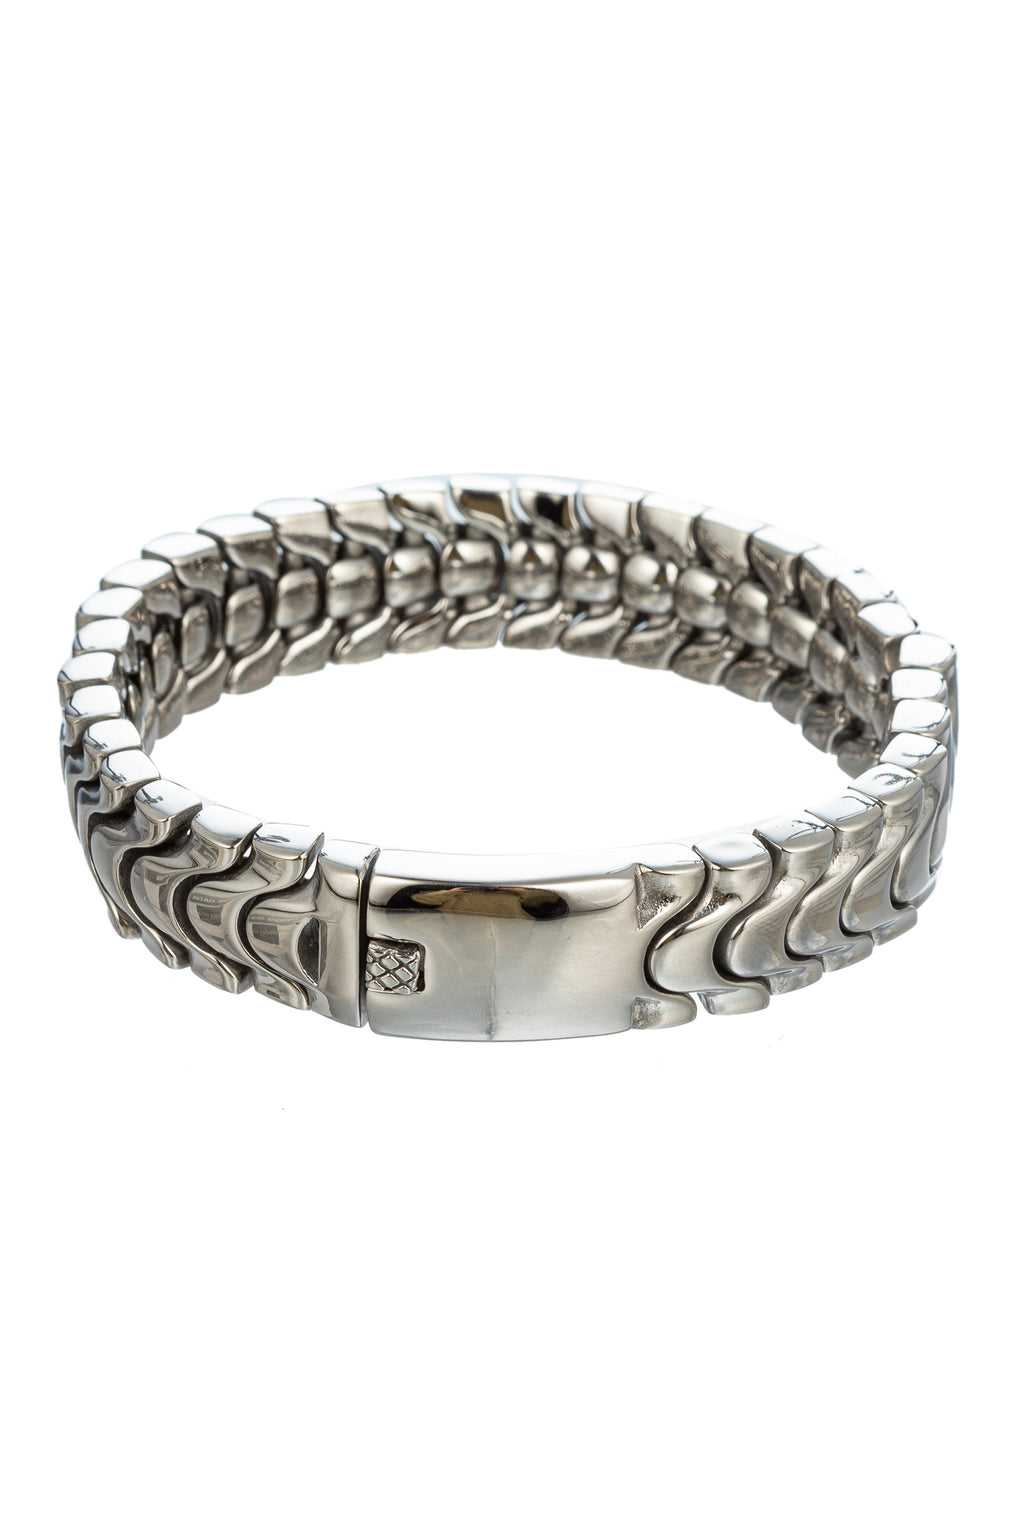 Silver tone titanium chain link bracelet.